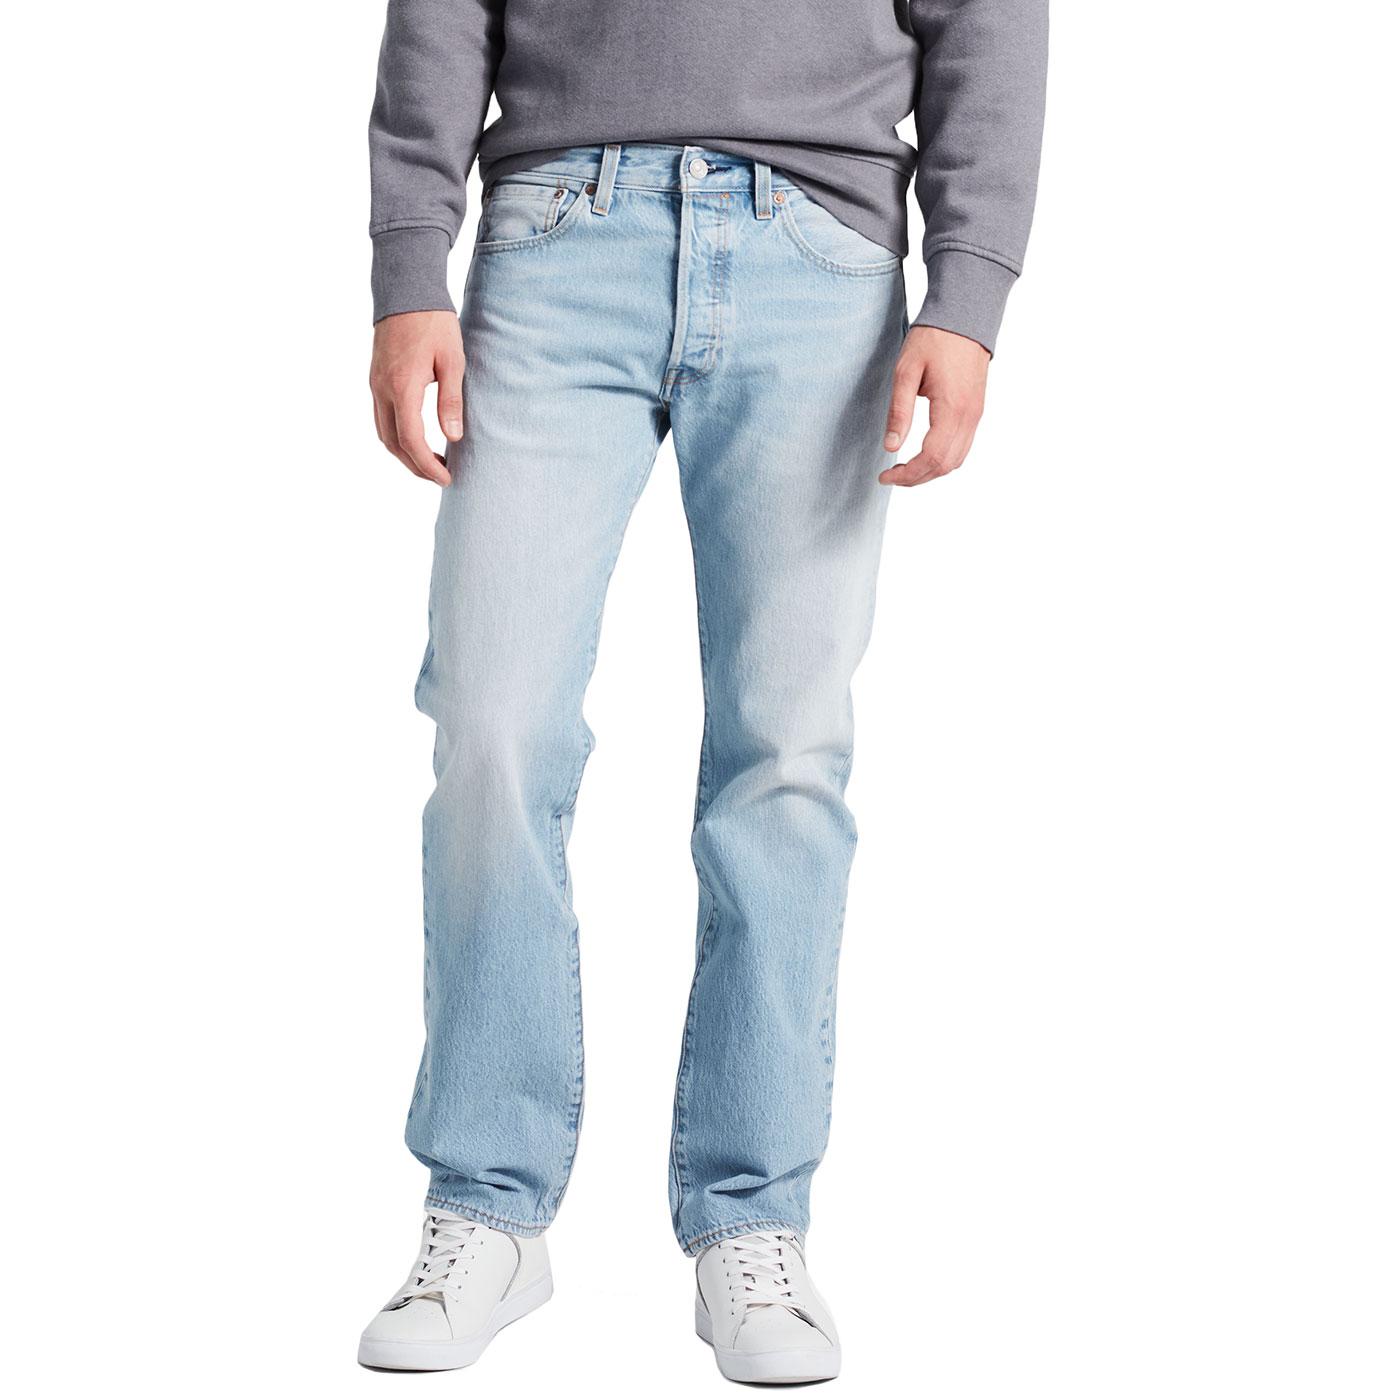 Купить джинсы мужские красноярск